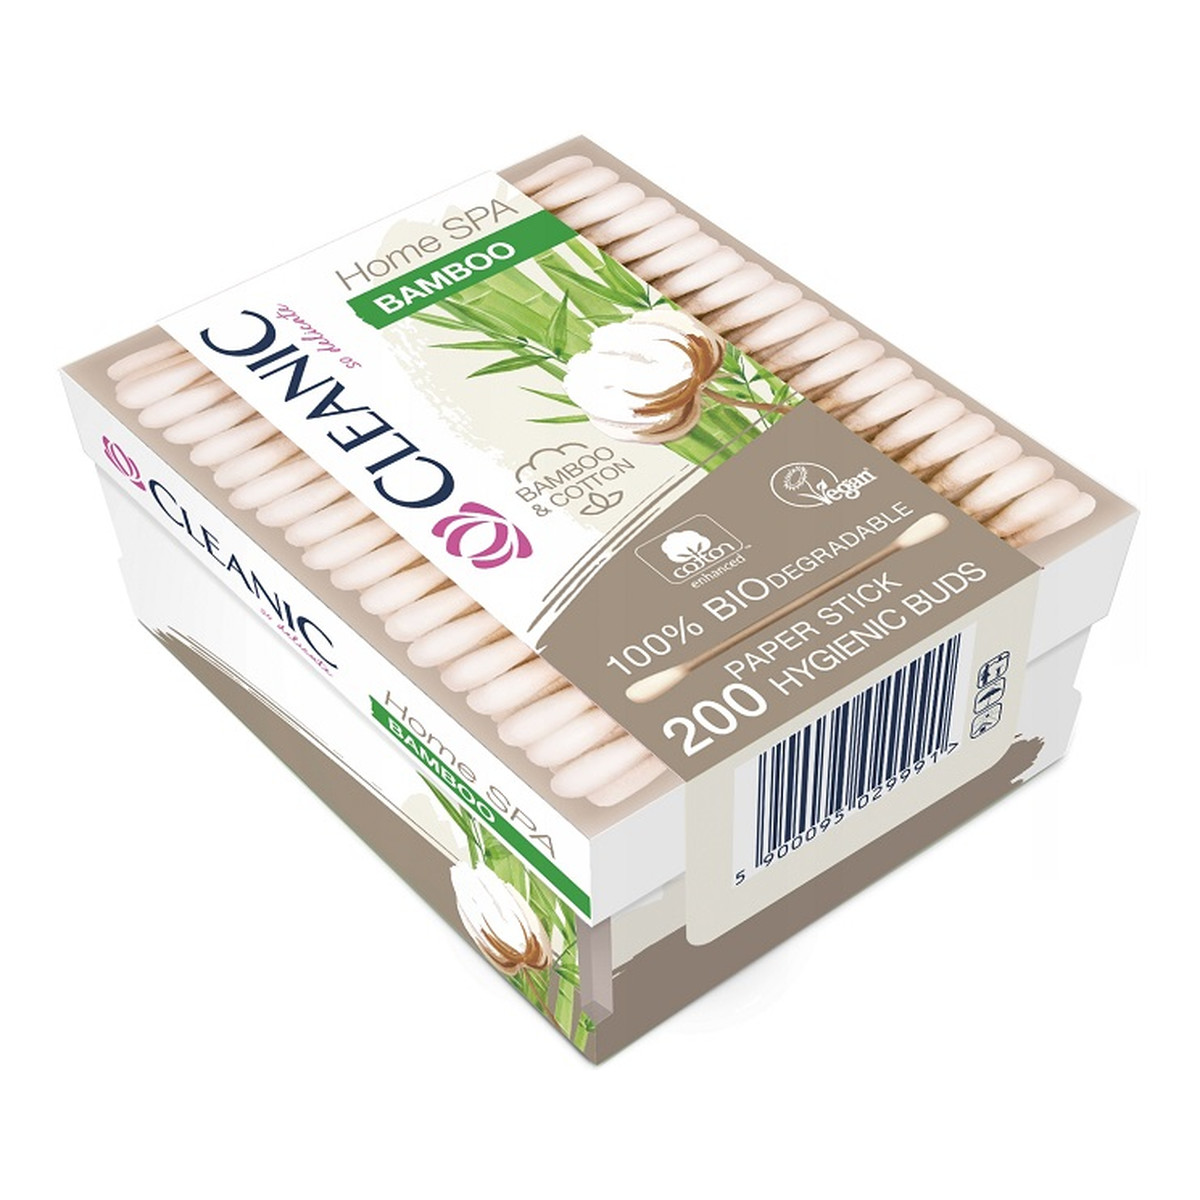 Cleanic Home SPA Bamboo patyczki higieniczne pudełko 200szt.